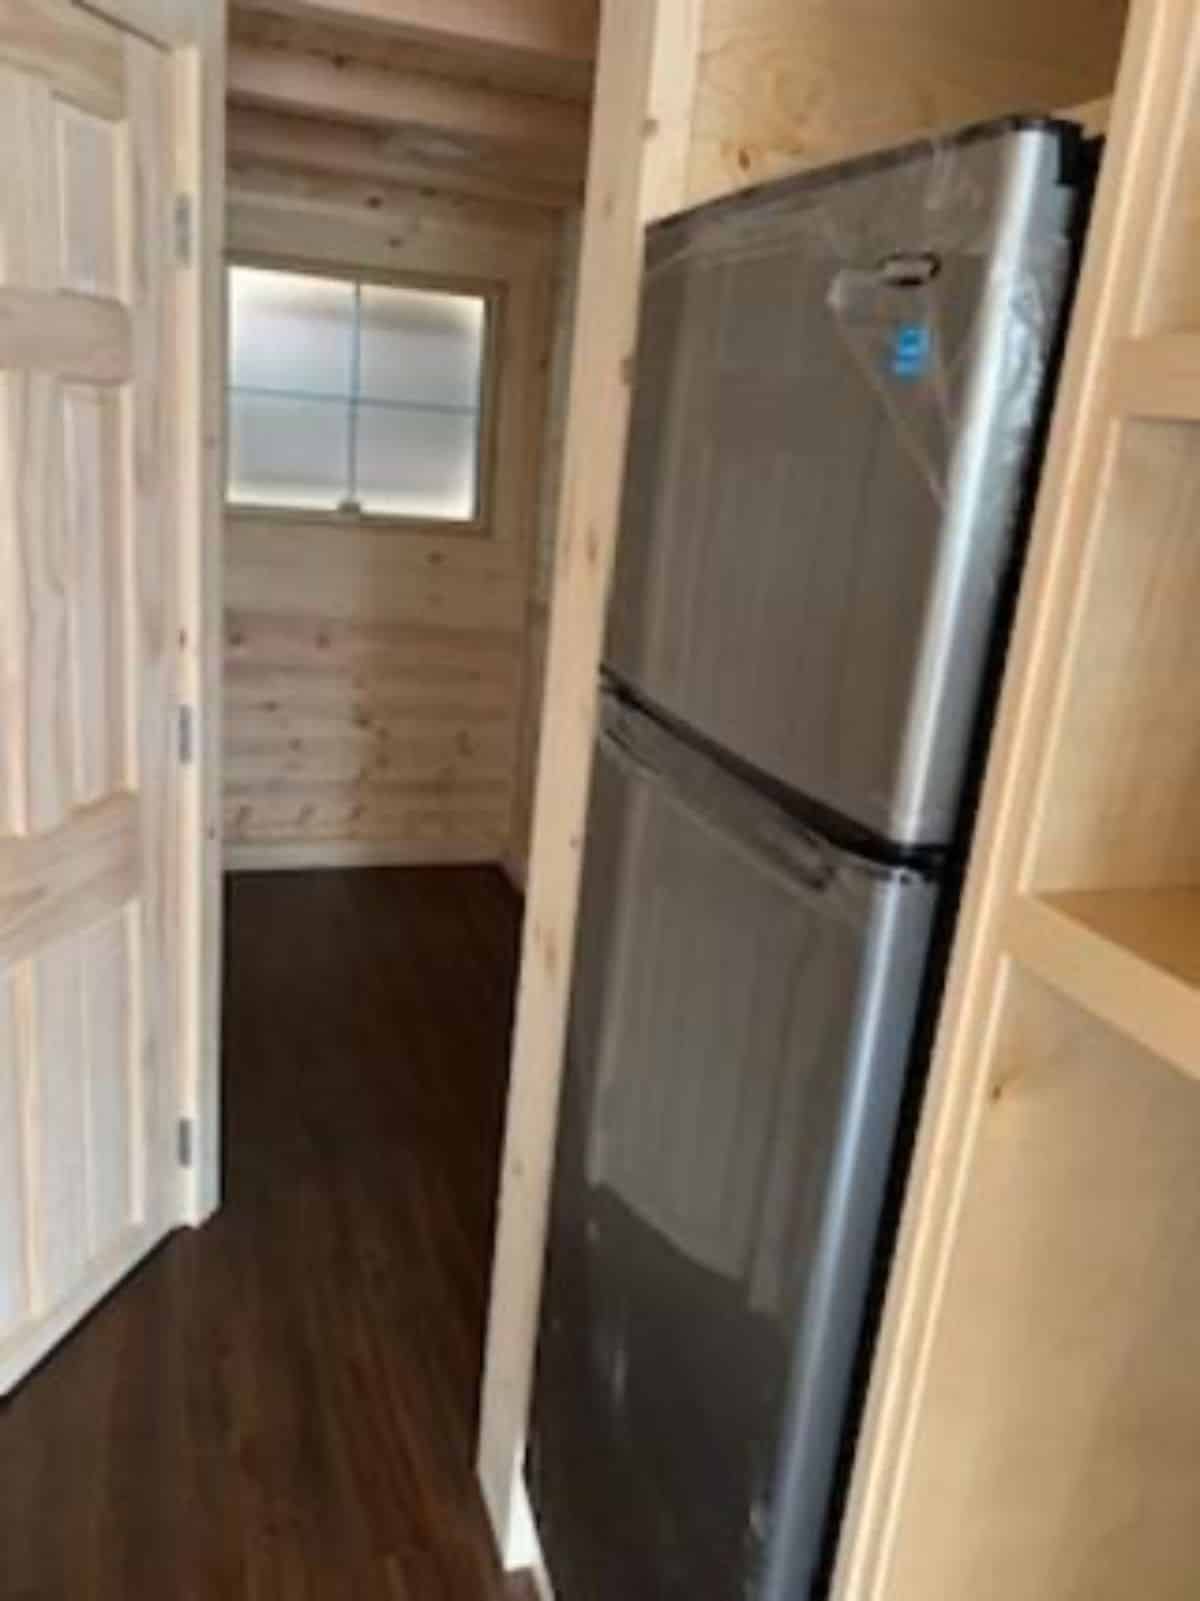 double door refrigerator in kitchen